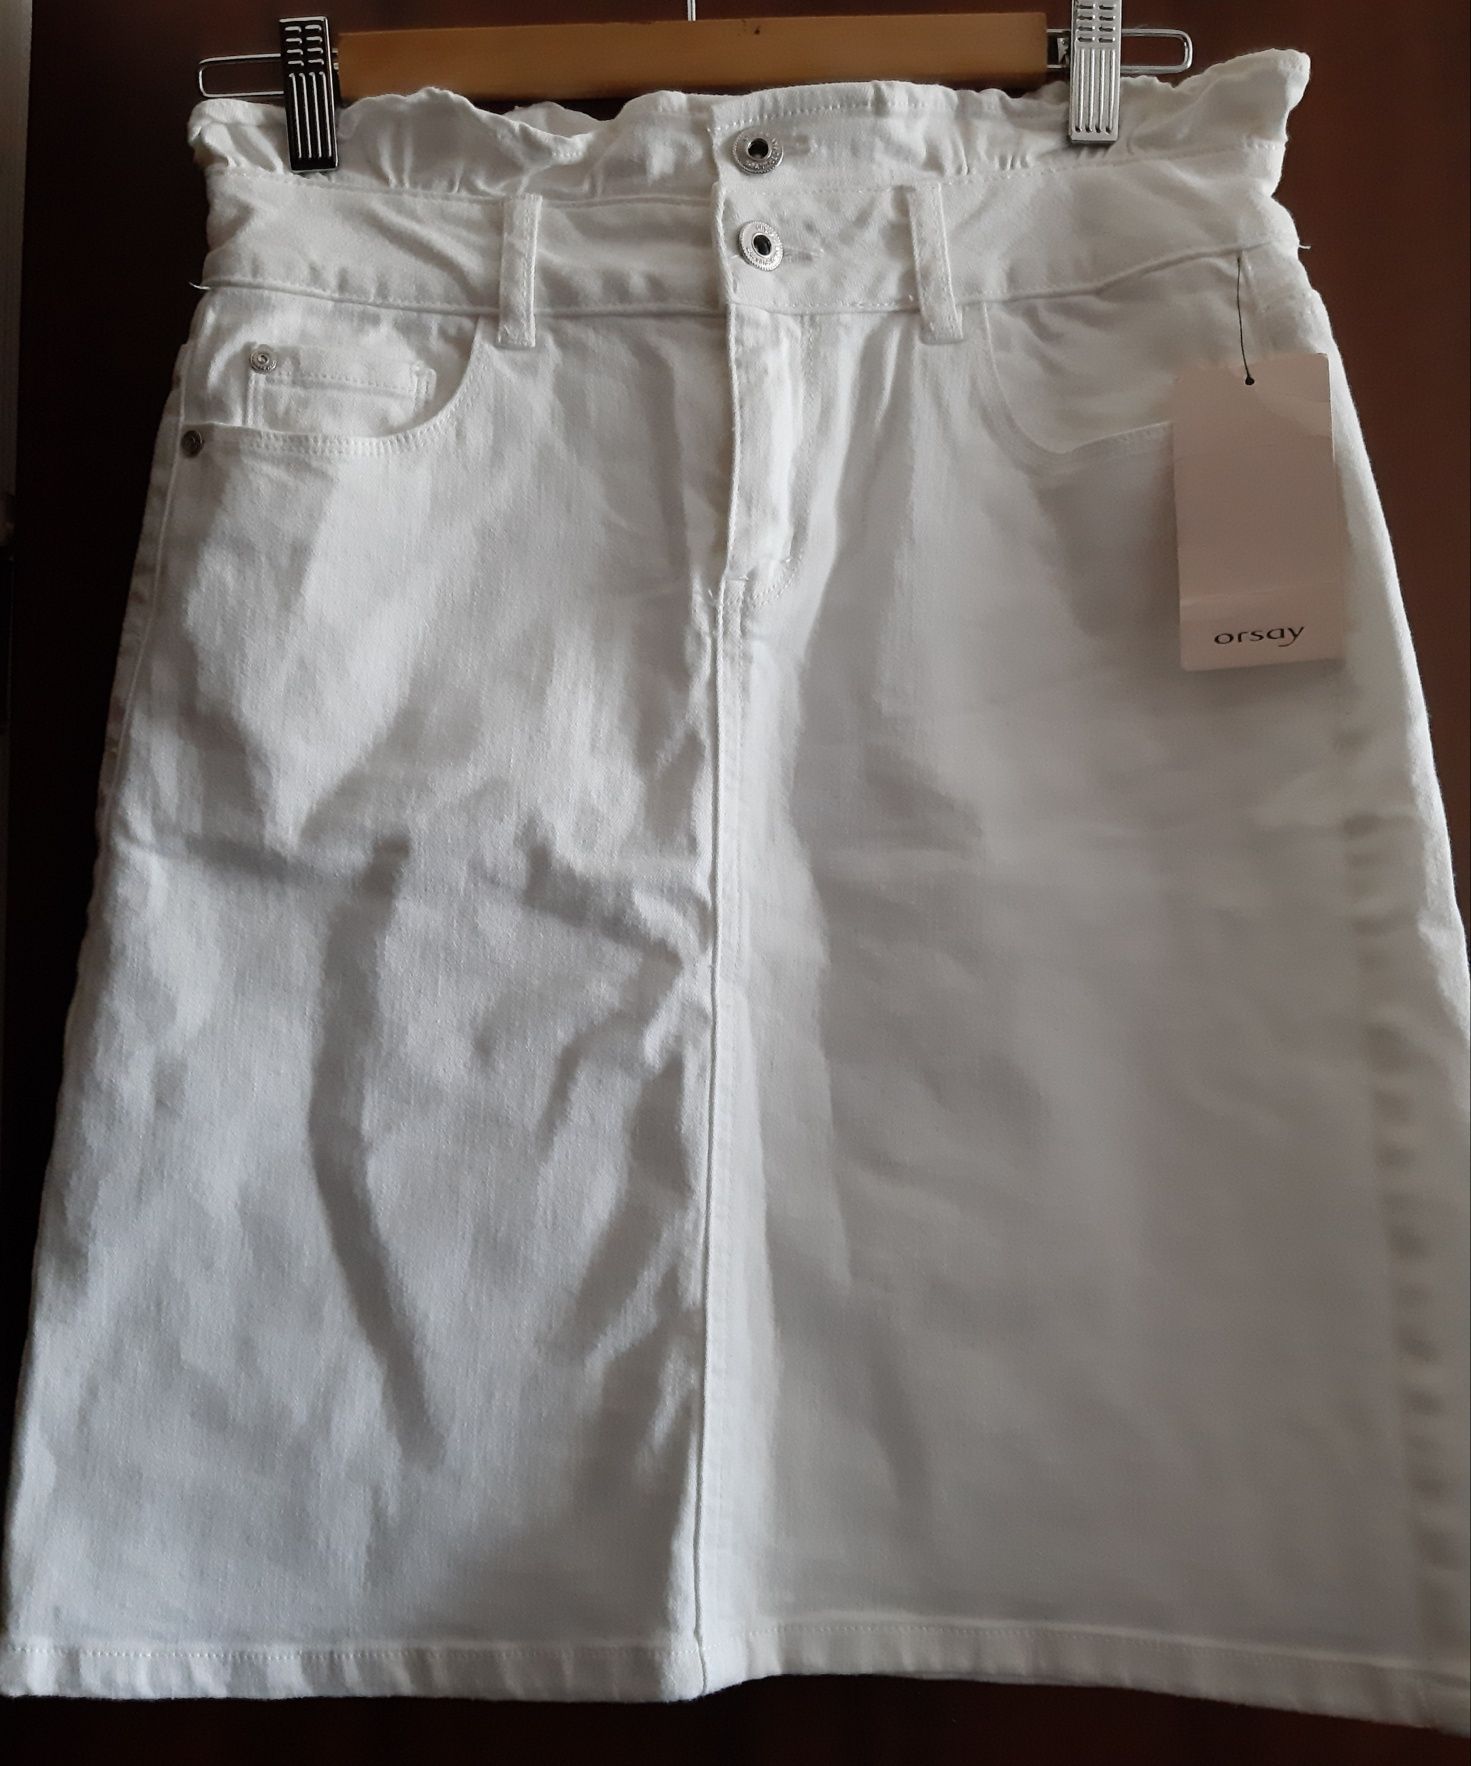 Spodniczka damska jeansowa biała roz 36